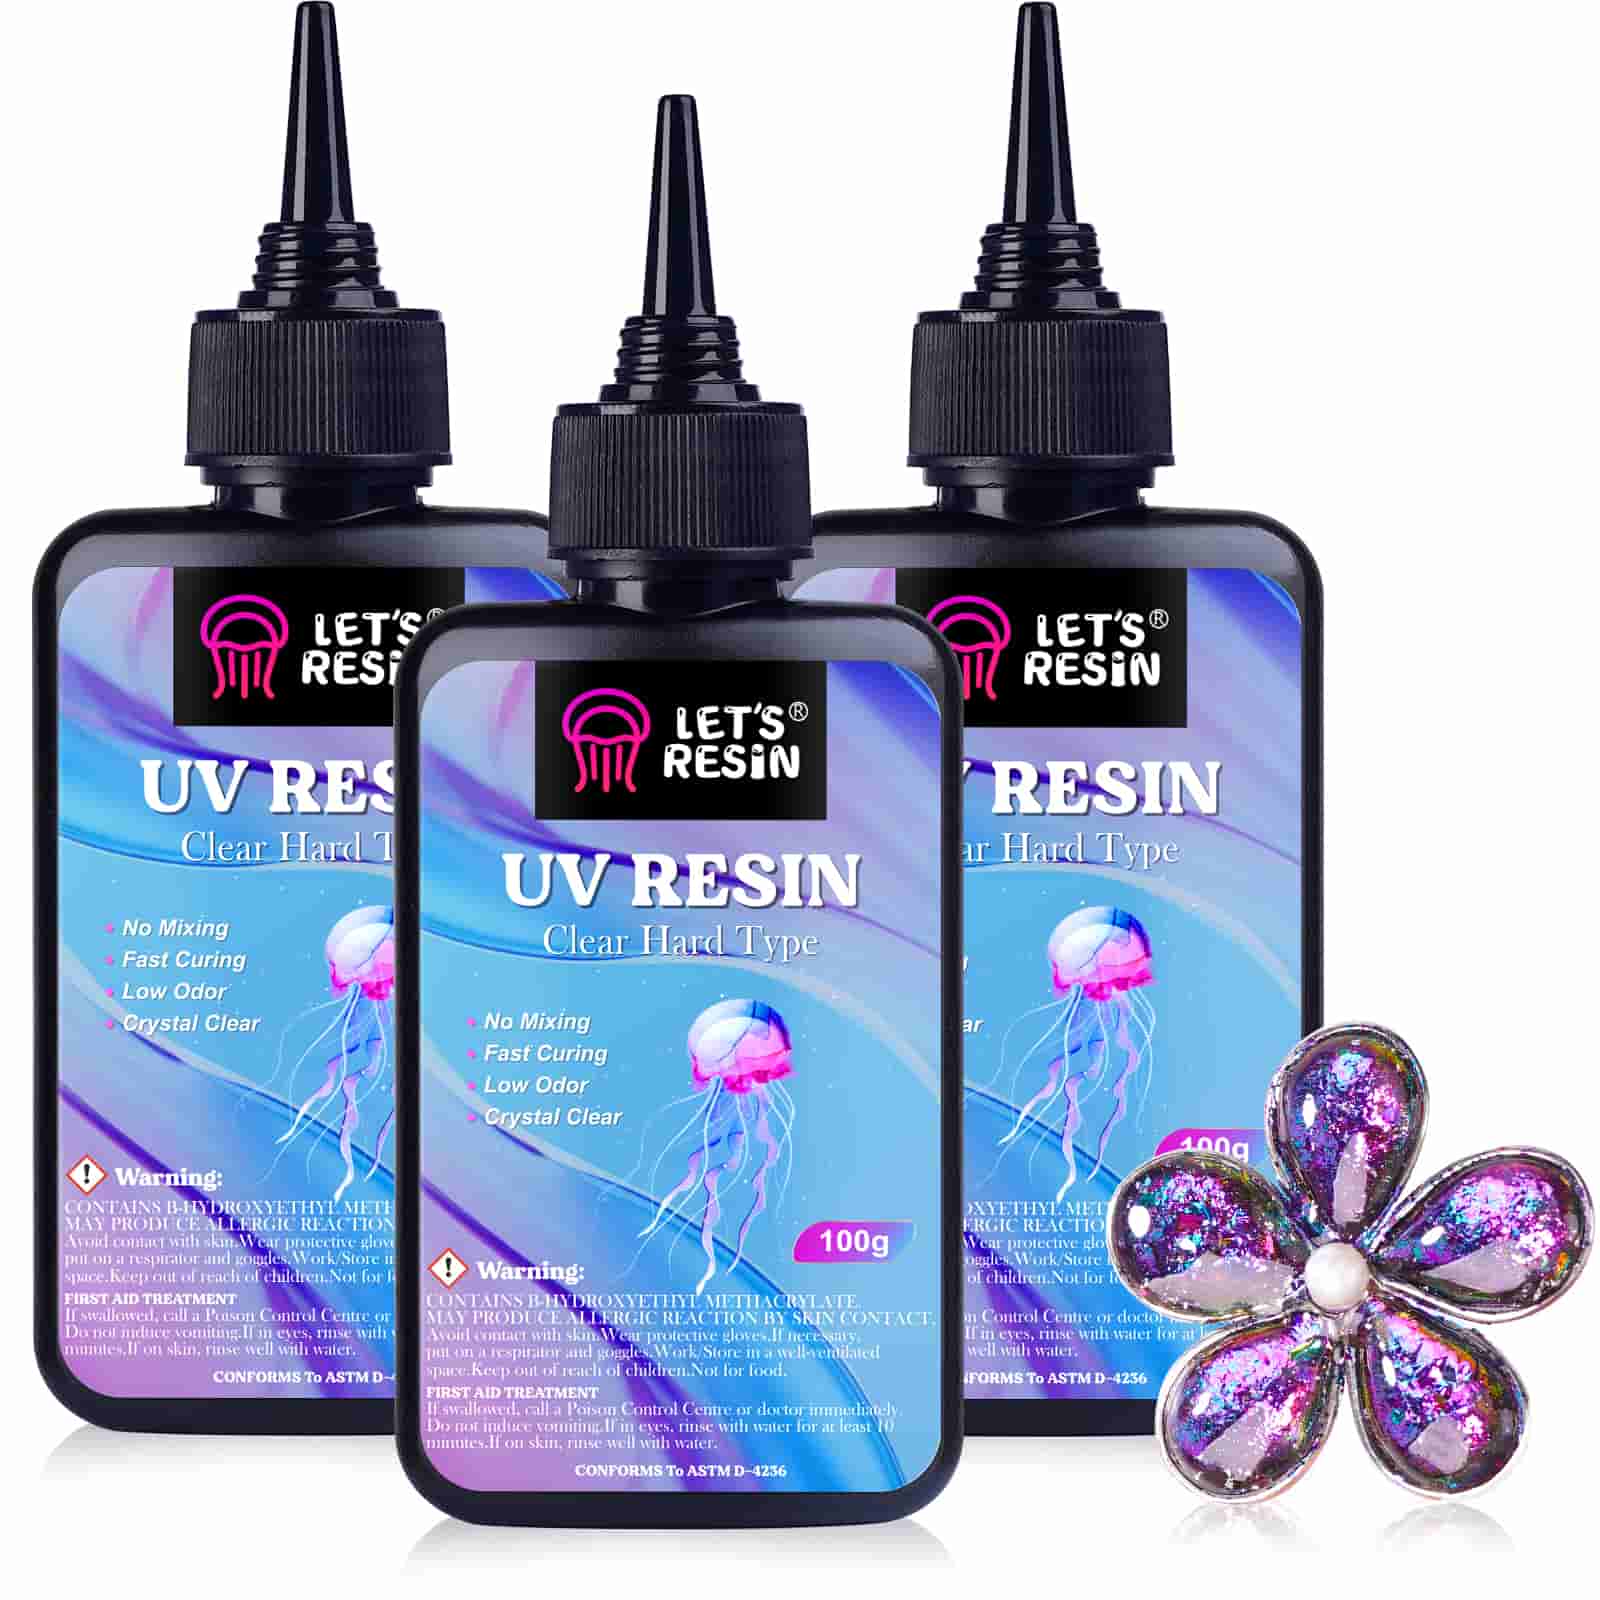 LET'S Resin UV Resin,upgraded 500g Clear UV Resin Kit Hard Type